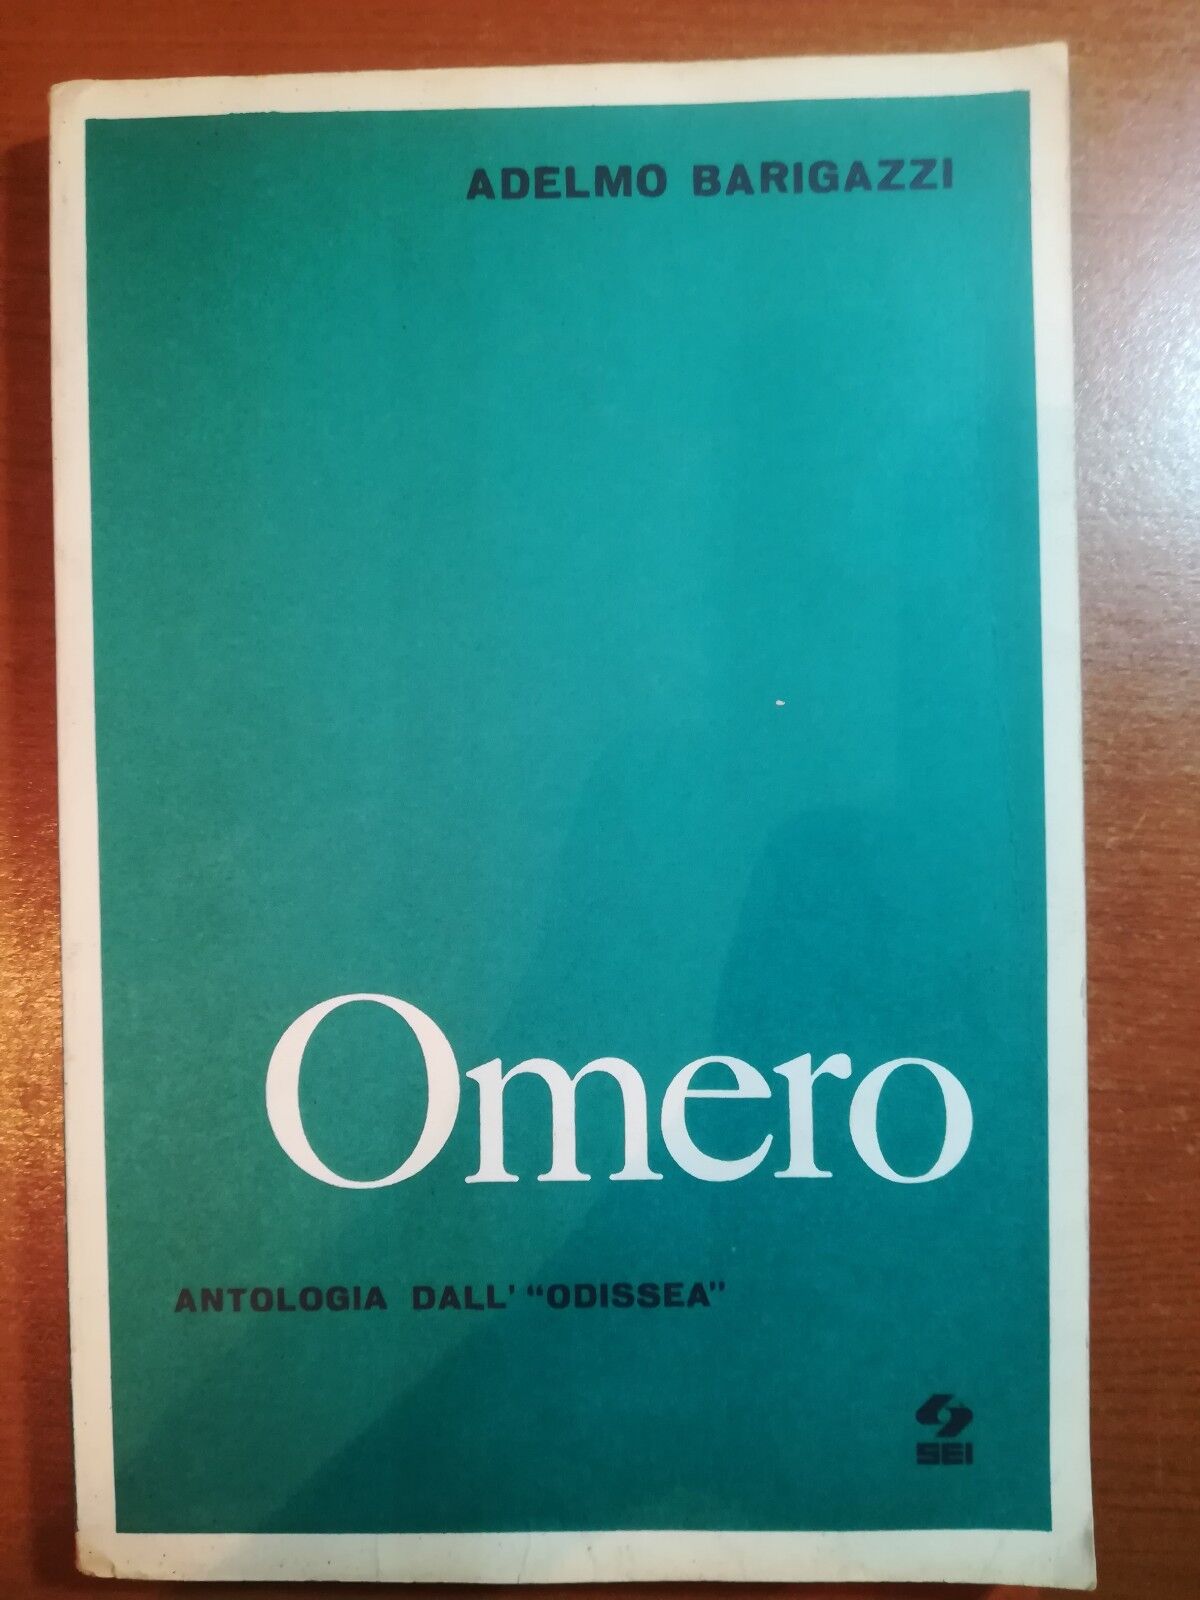 Omero - Adelmo Barigazzi - Sei - 1984 - M